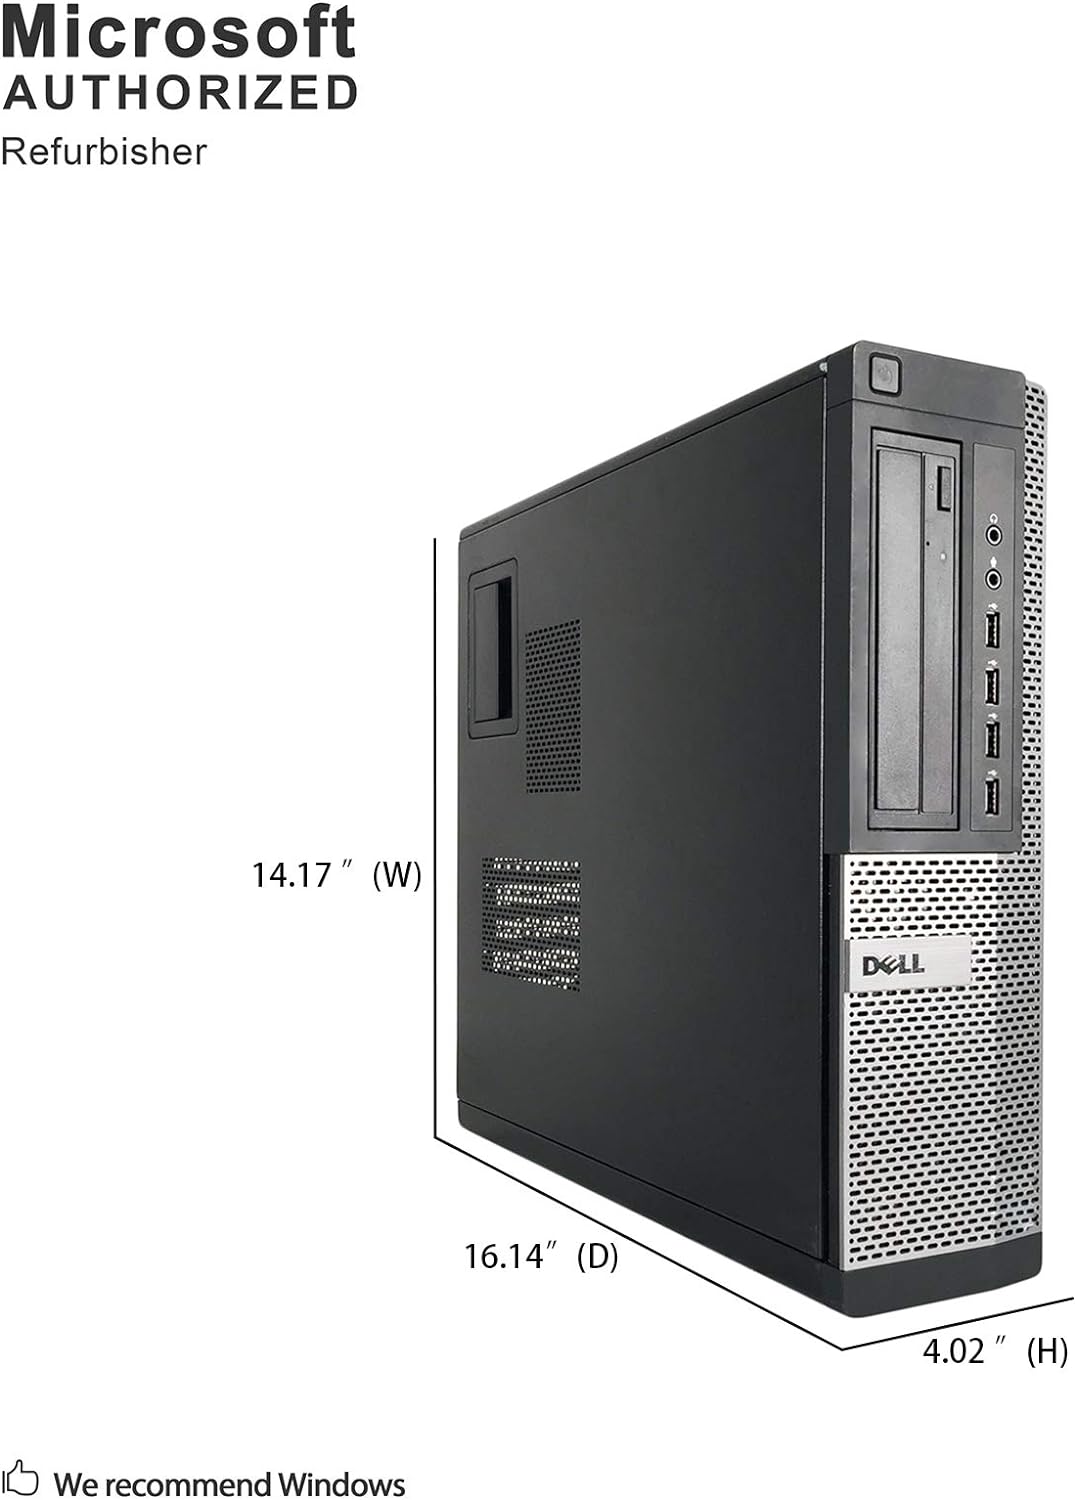 Dell Optiplex 7010 Desktop Computer - Intel Core i5 3.6GHz, 16GB DDR3, New 500GB SSD, Windows 10 Pro 64-Bit, WiFi, USB 3.0, DVDRW, 2X Display Port